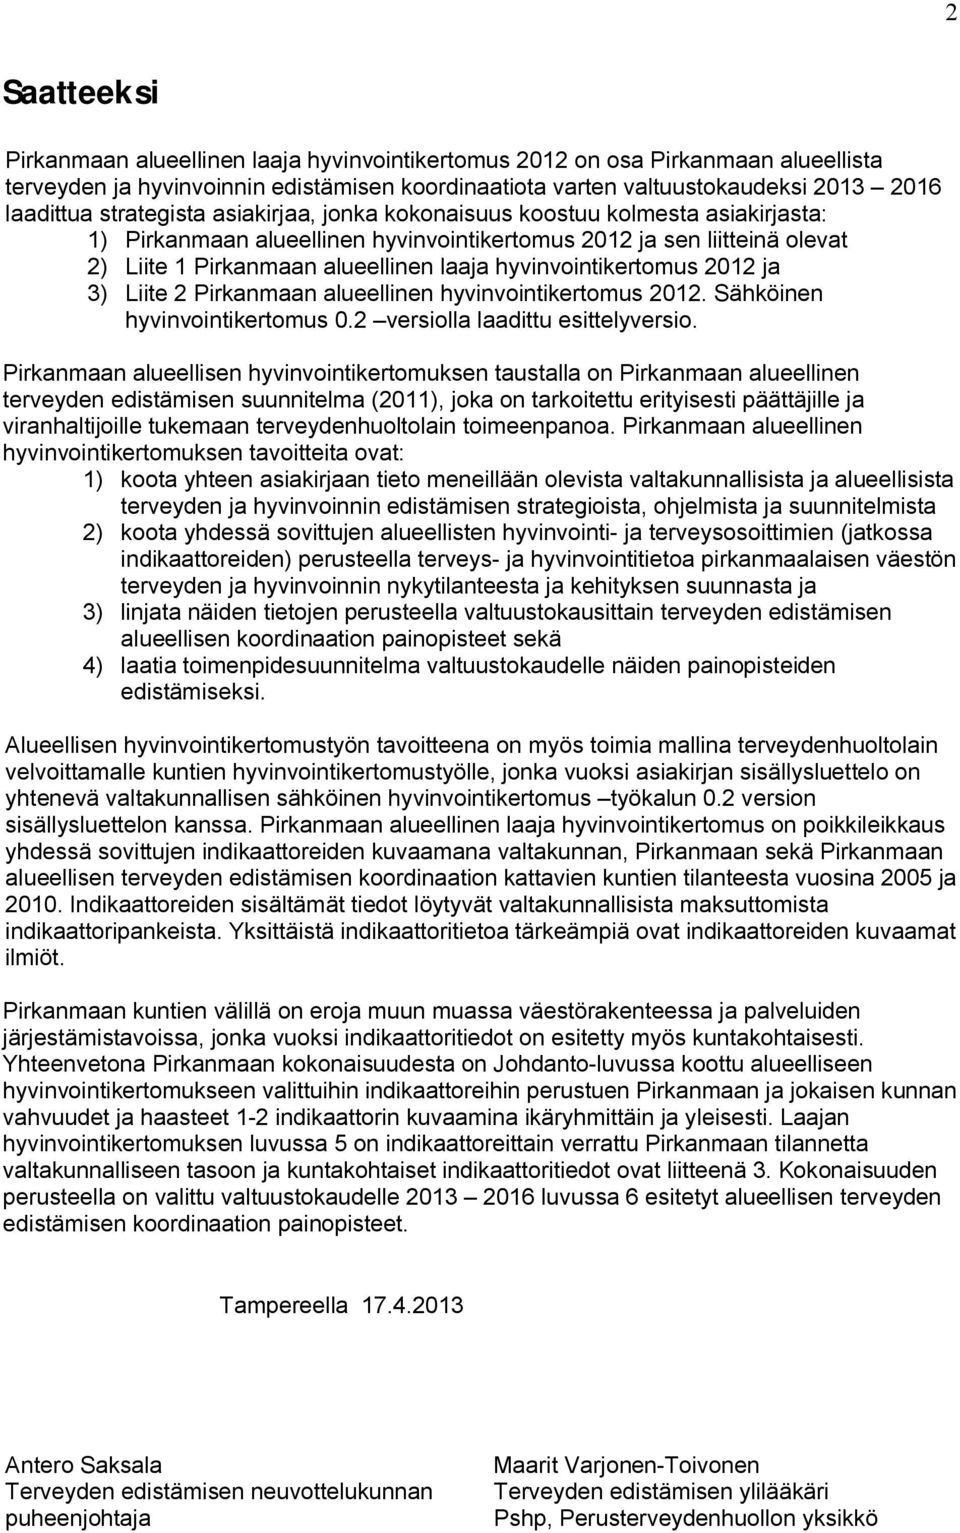 hyvinvointikertomus 2012 ja 3) Liite 2 Pirkanmaan alueellinen hyvinvointikertomus 2012. Sähköinen hyvinvointikertomus 0.2 versiolla laadittu esittelyversio.